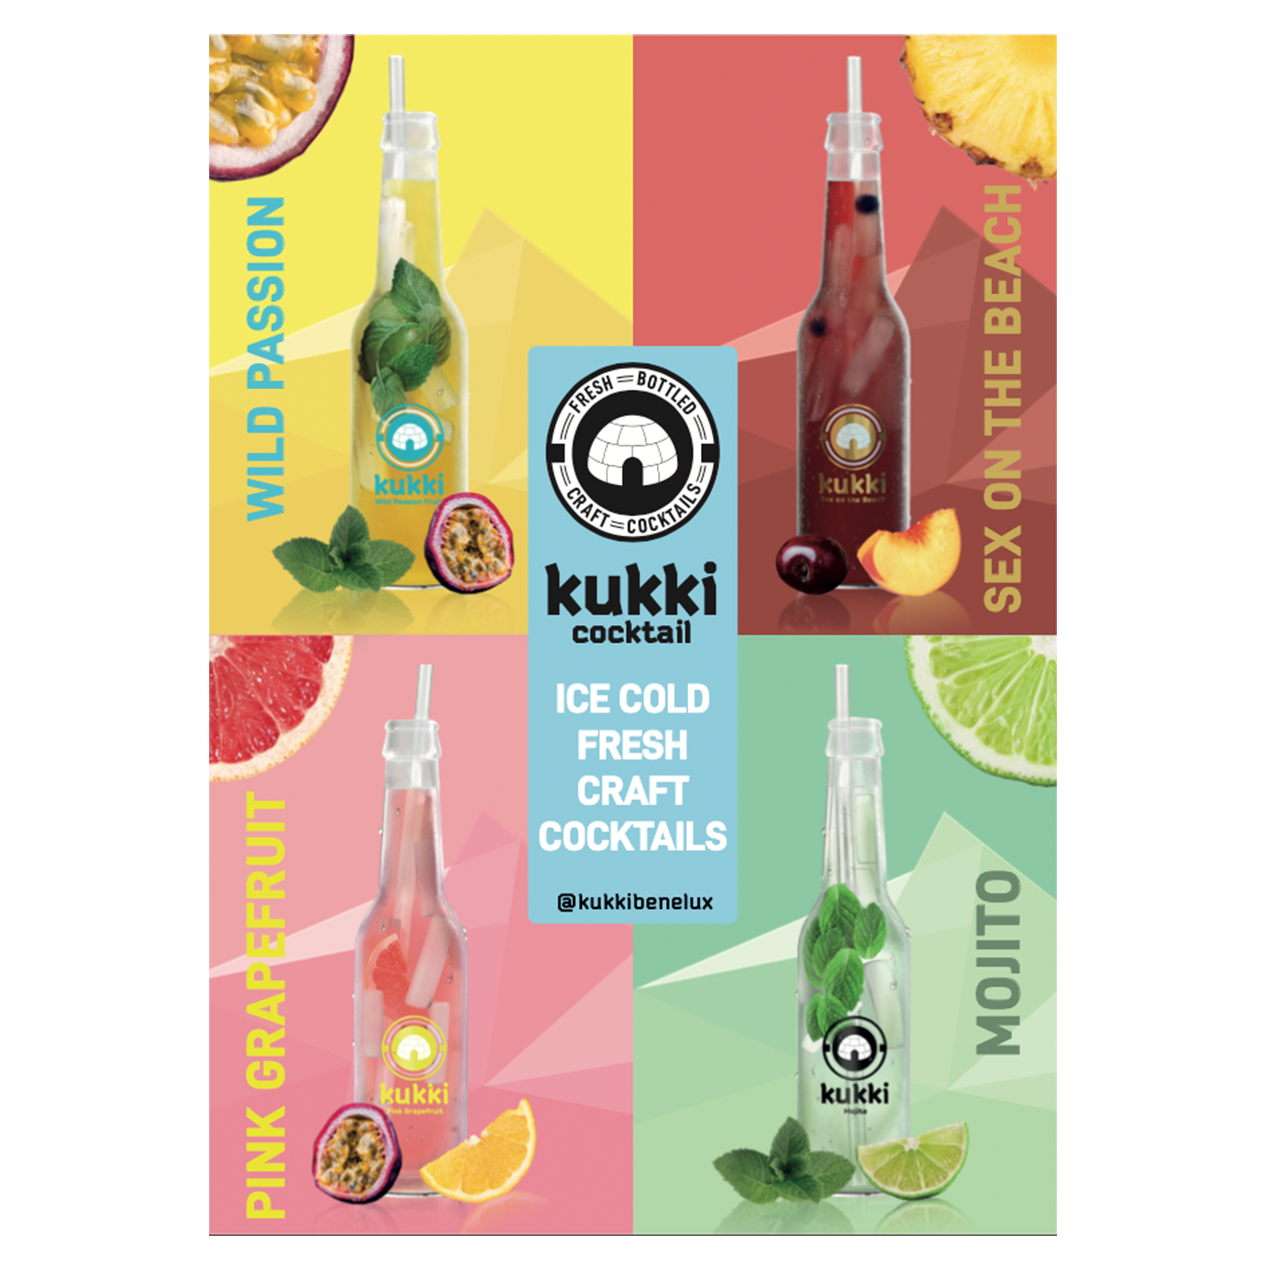 Marketing Materiaal Kukki Cocktail 9634